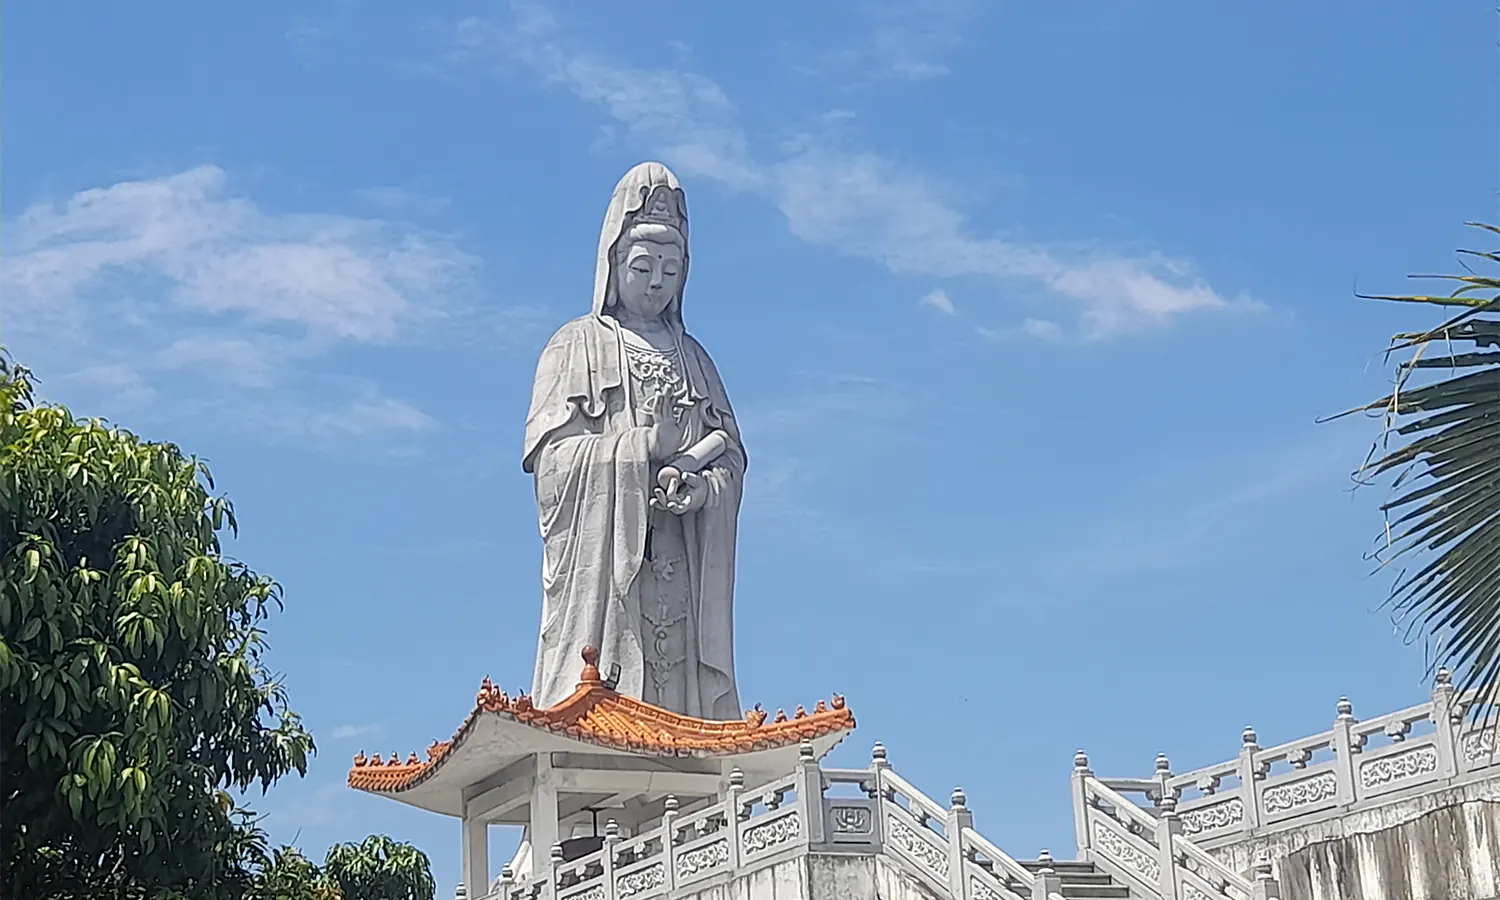 Berwisata Religi di Vihara Avalokitesvara Sembari Mengagumi Keindahan Patung Dewi Kwan Im di Kota Pematang Siantar - Parboaboa